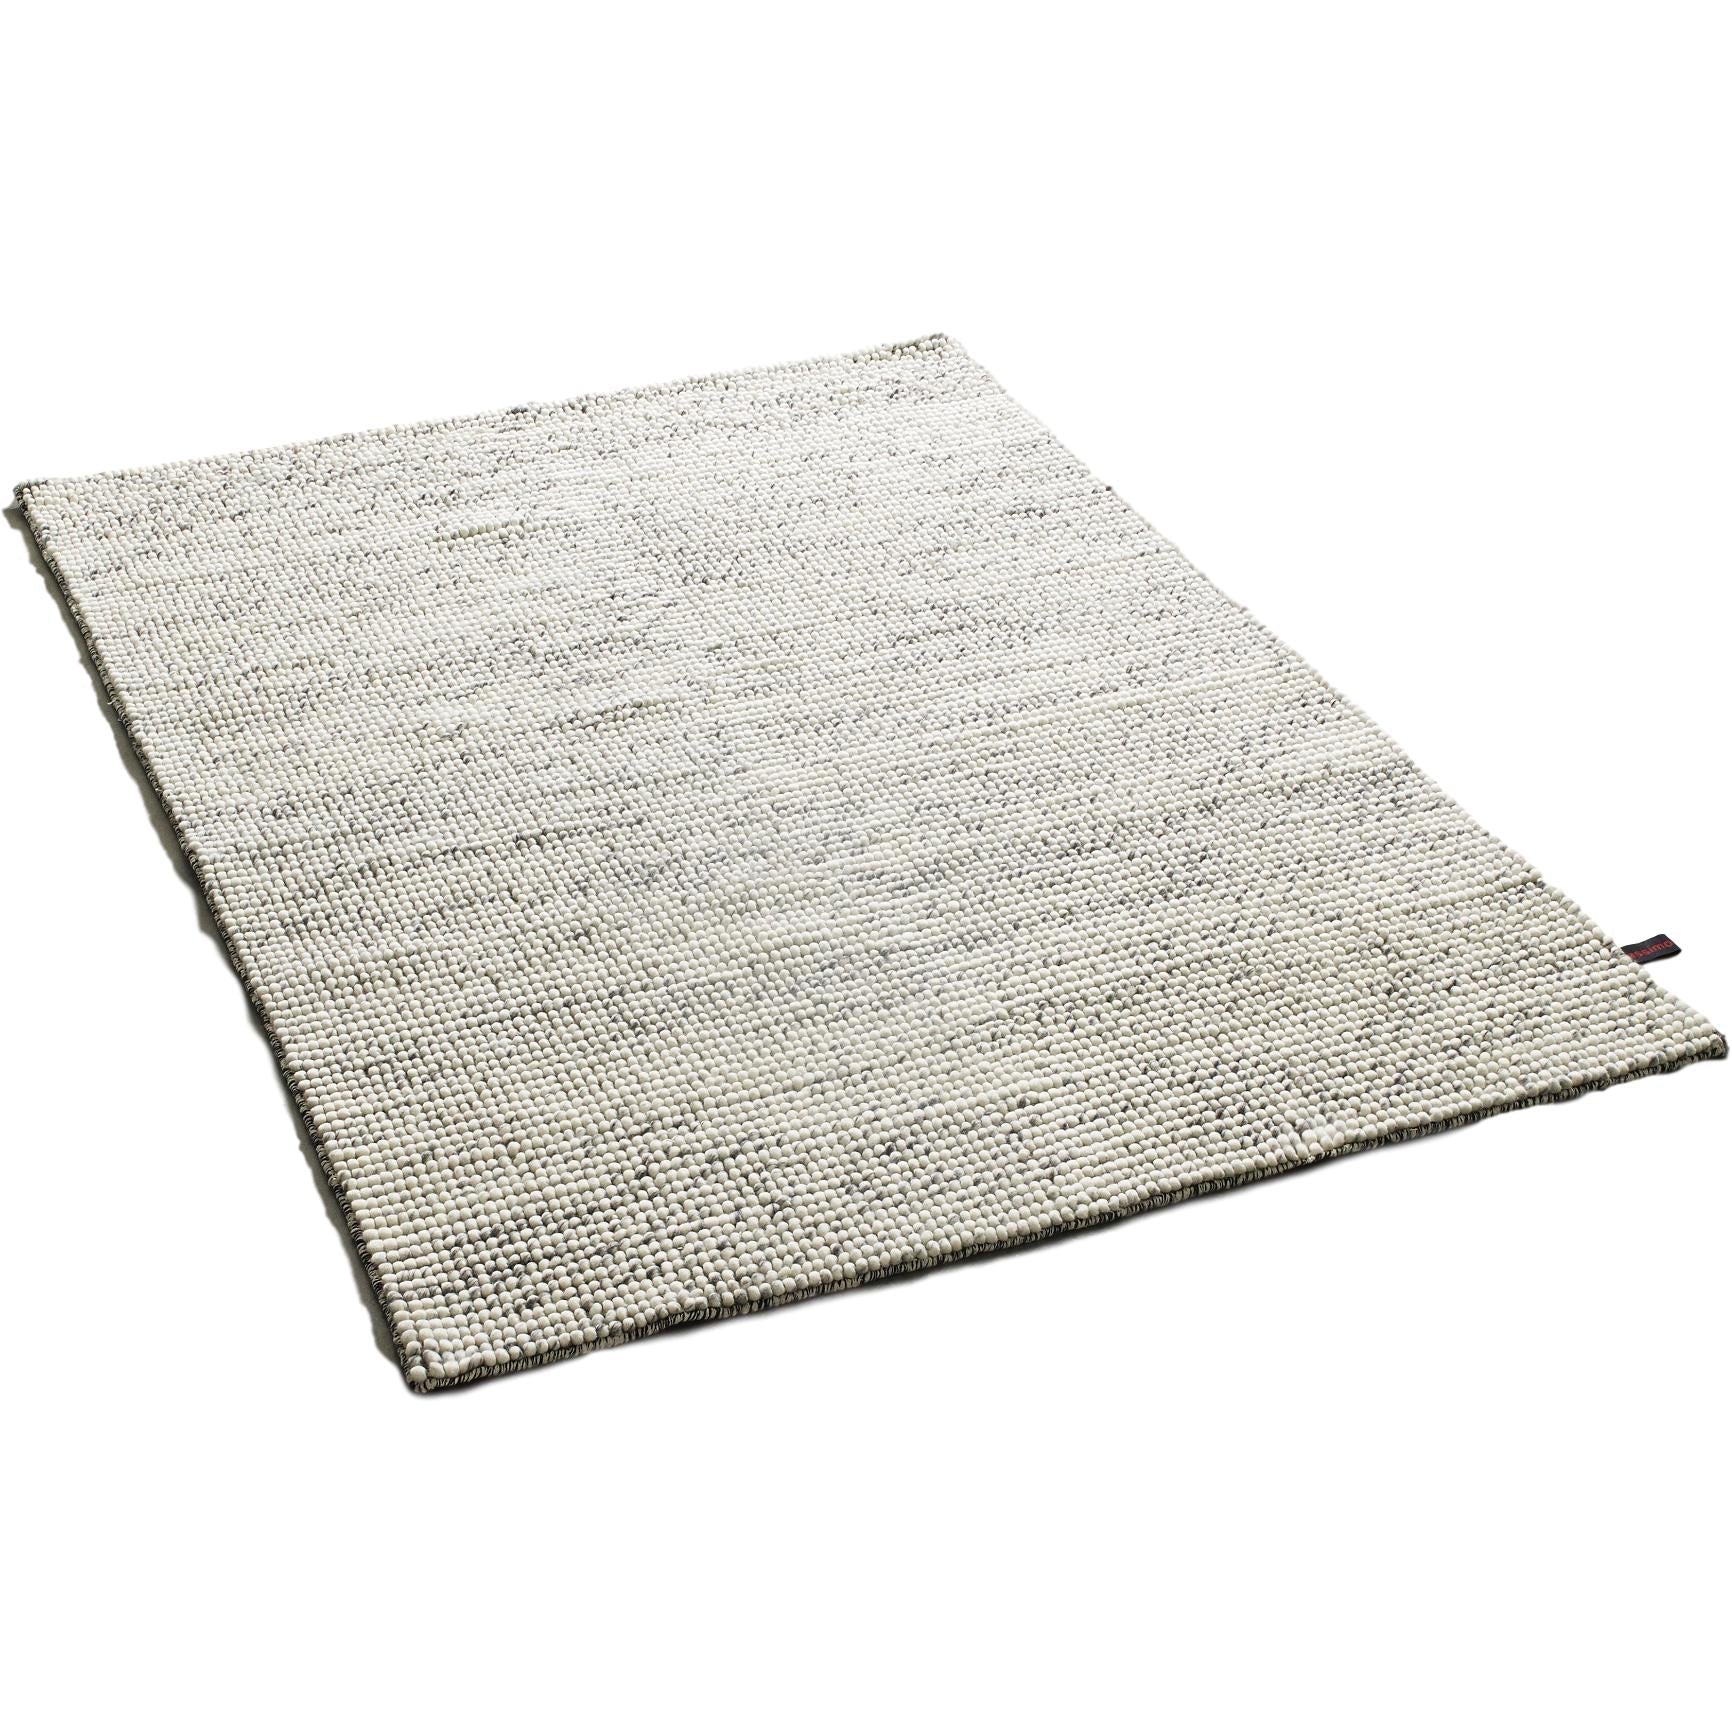 Massimo Bubbles tæppe blandet grå, 170x240 cm